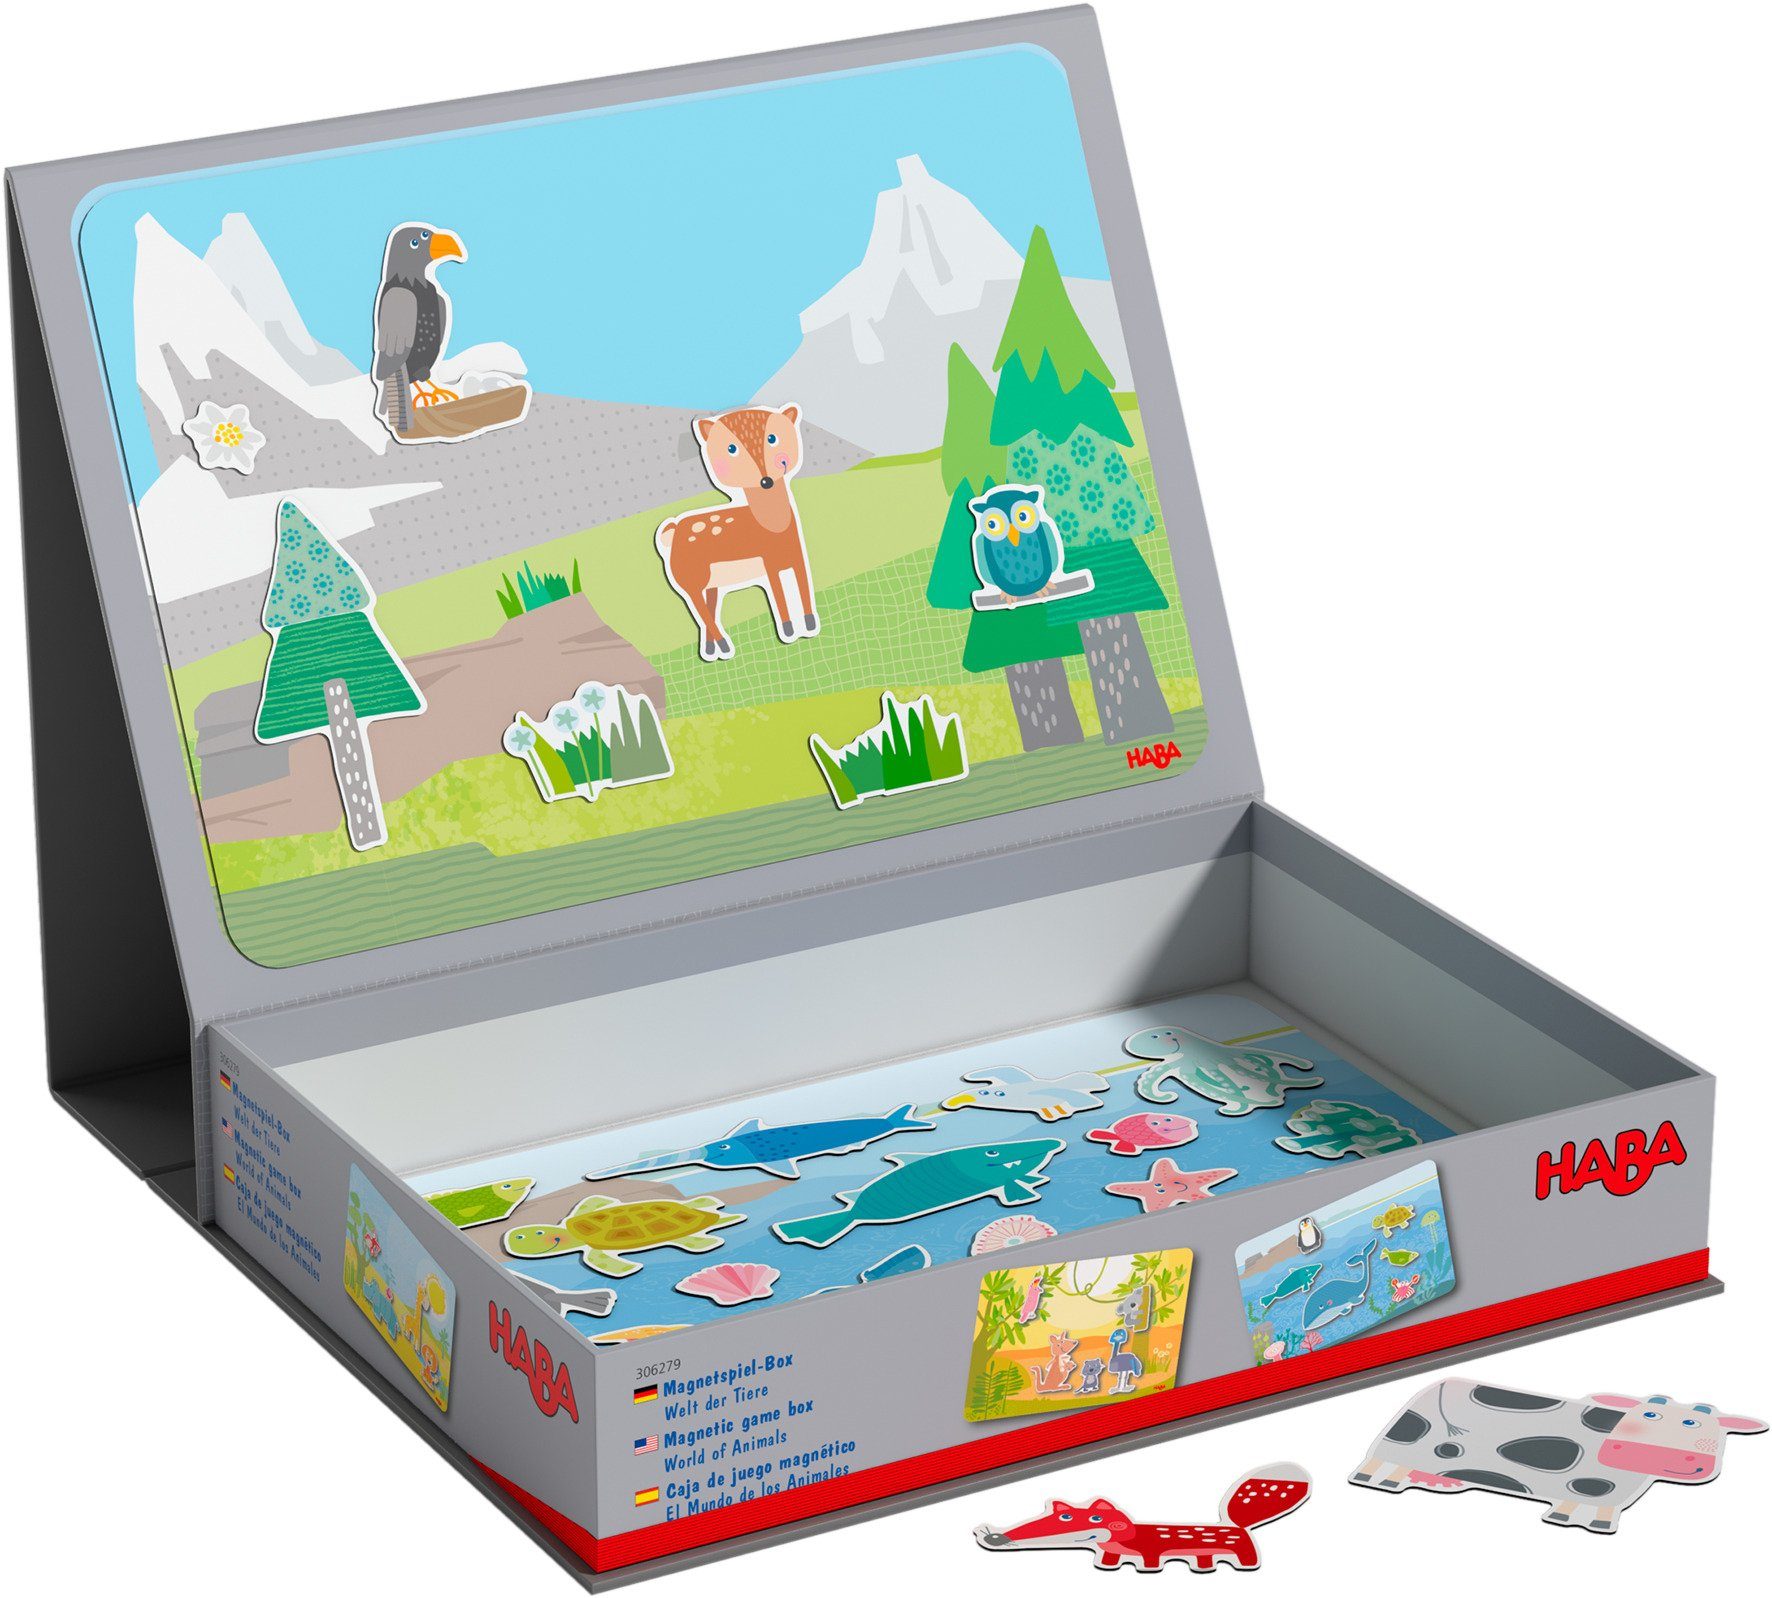 Spiel, Haba Magnetspiel-Box, Tiere Zuordnungsspiel Welt der